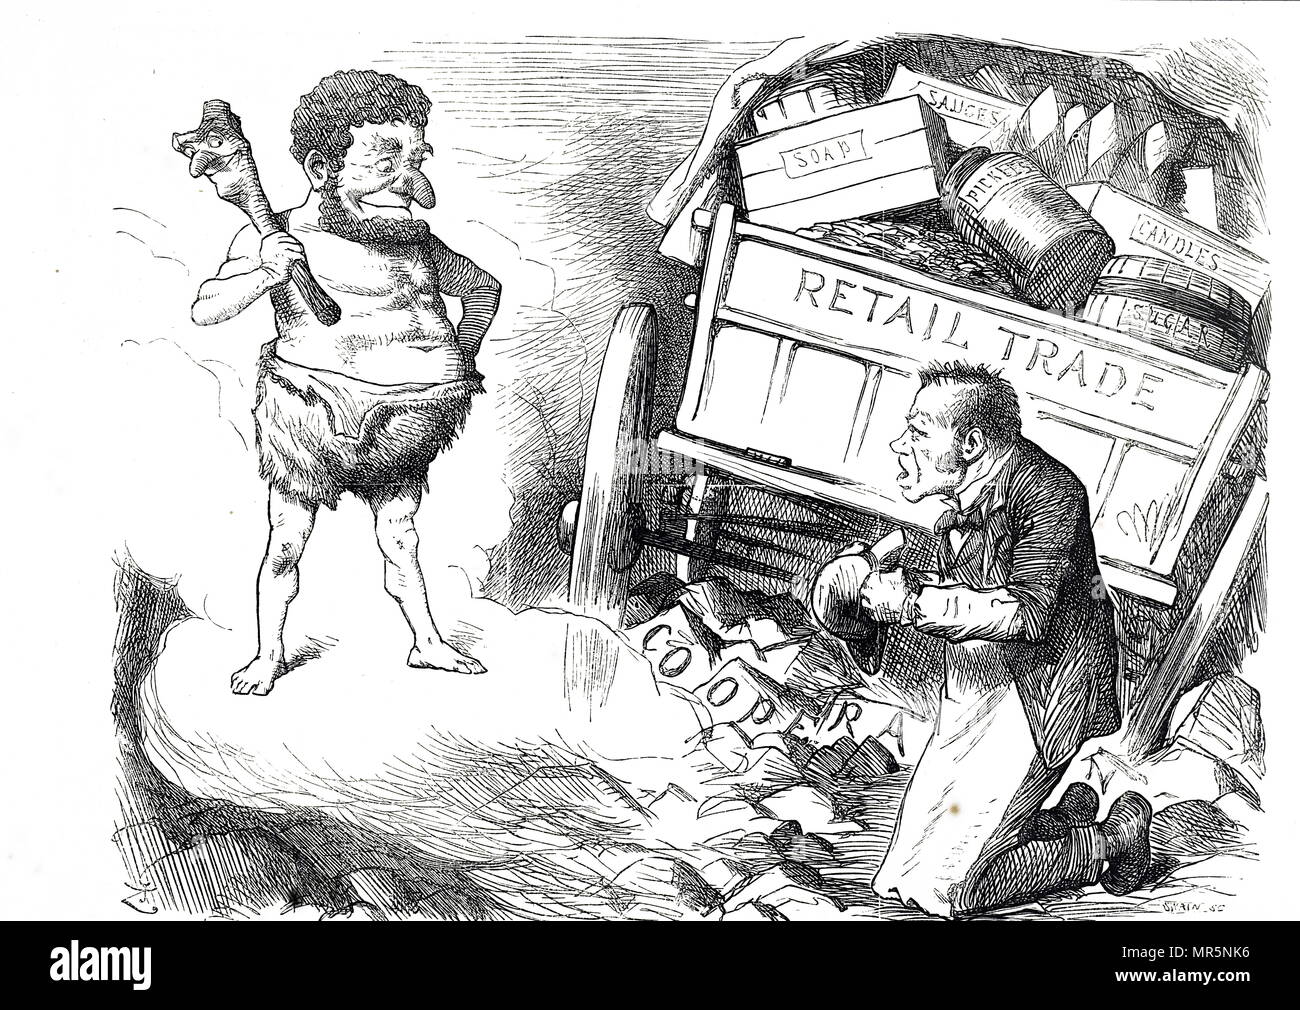 1879 cartoon crítica del movimiento cooperativo. El movimiento cooperativista comenzó en Europa en el siglo XIX, principalmente en Francia y Gran Bretaña, Foto de stock